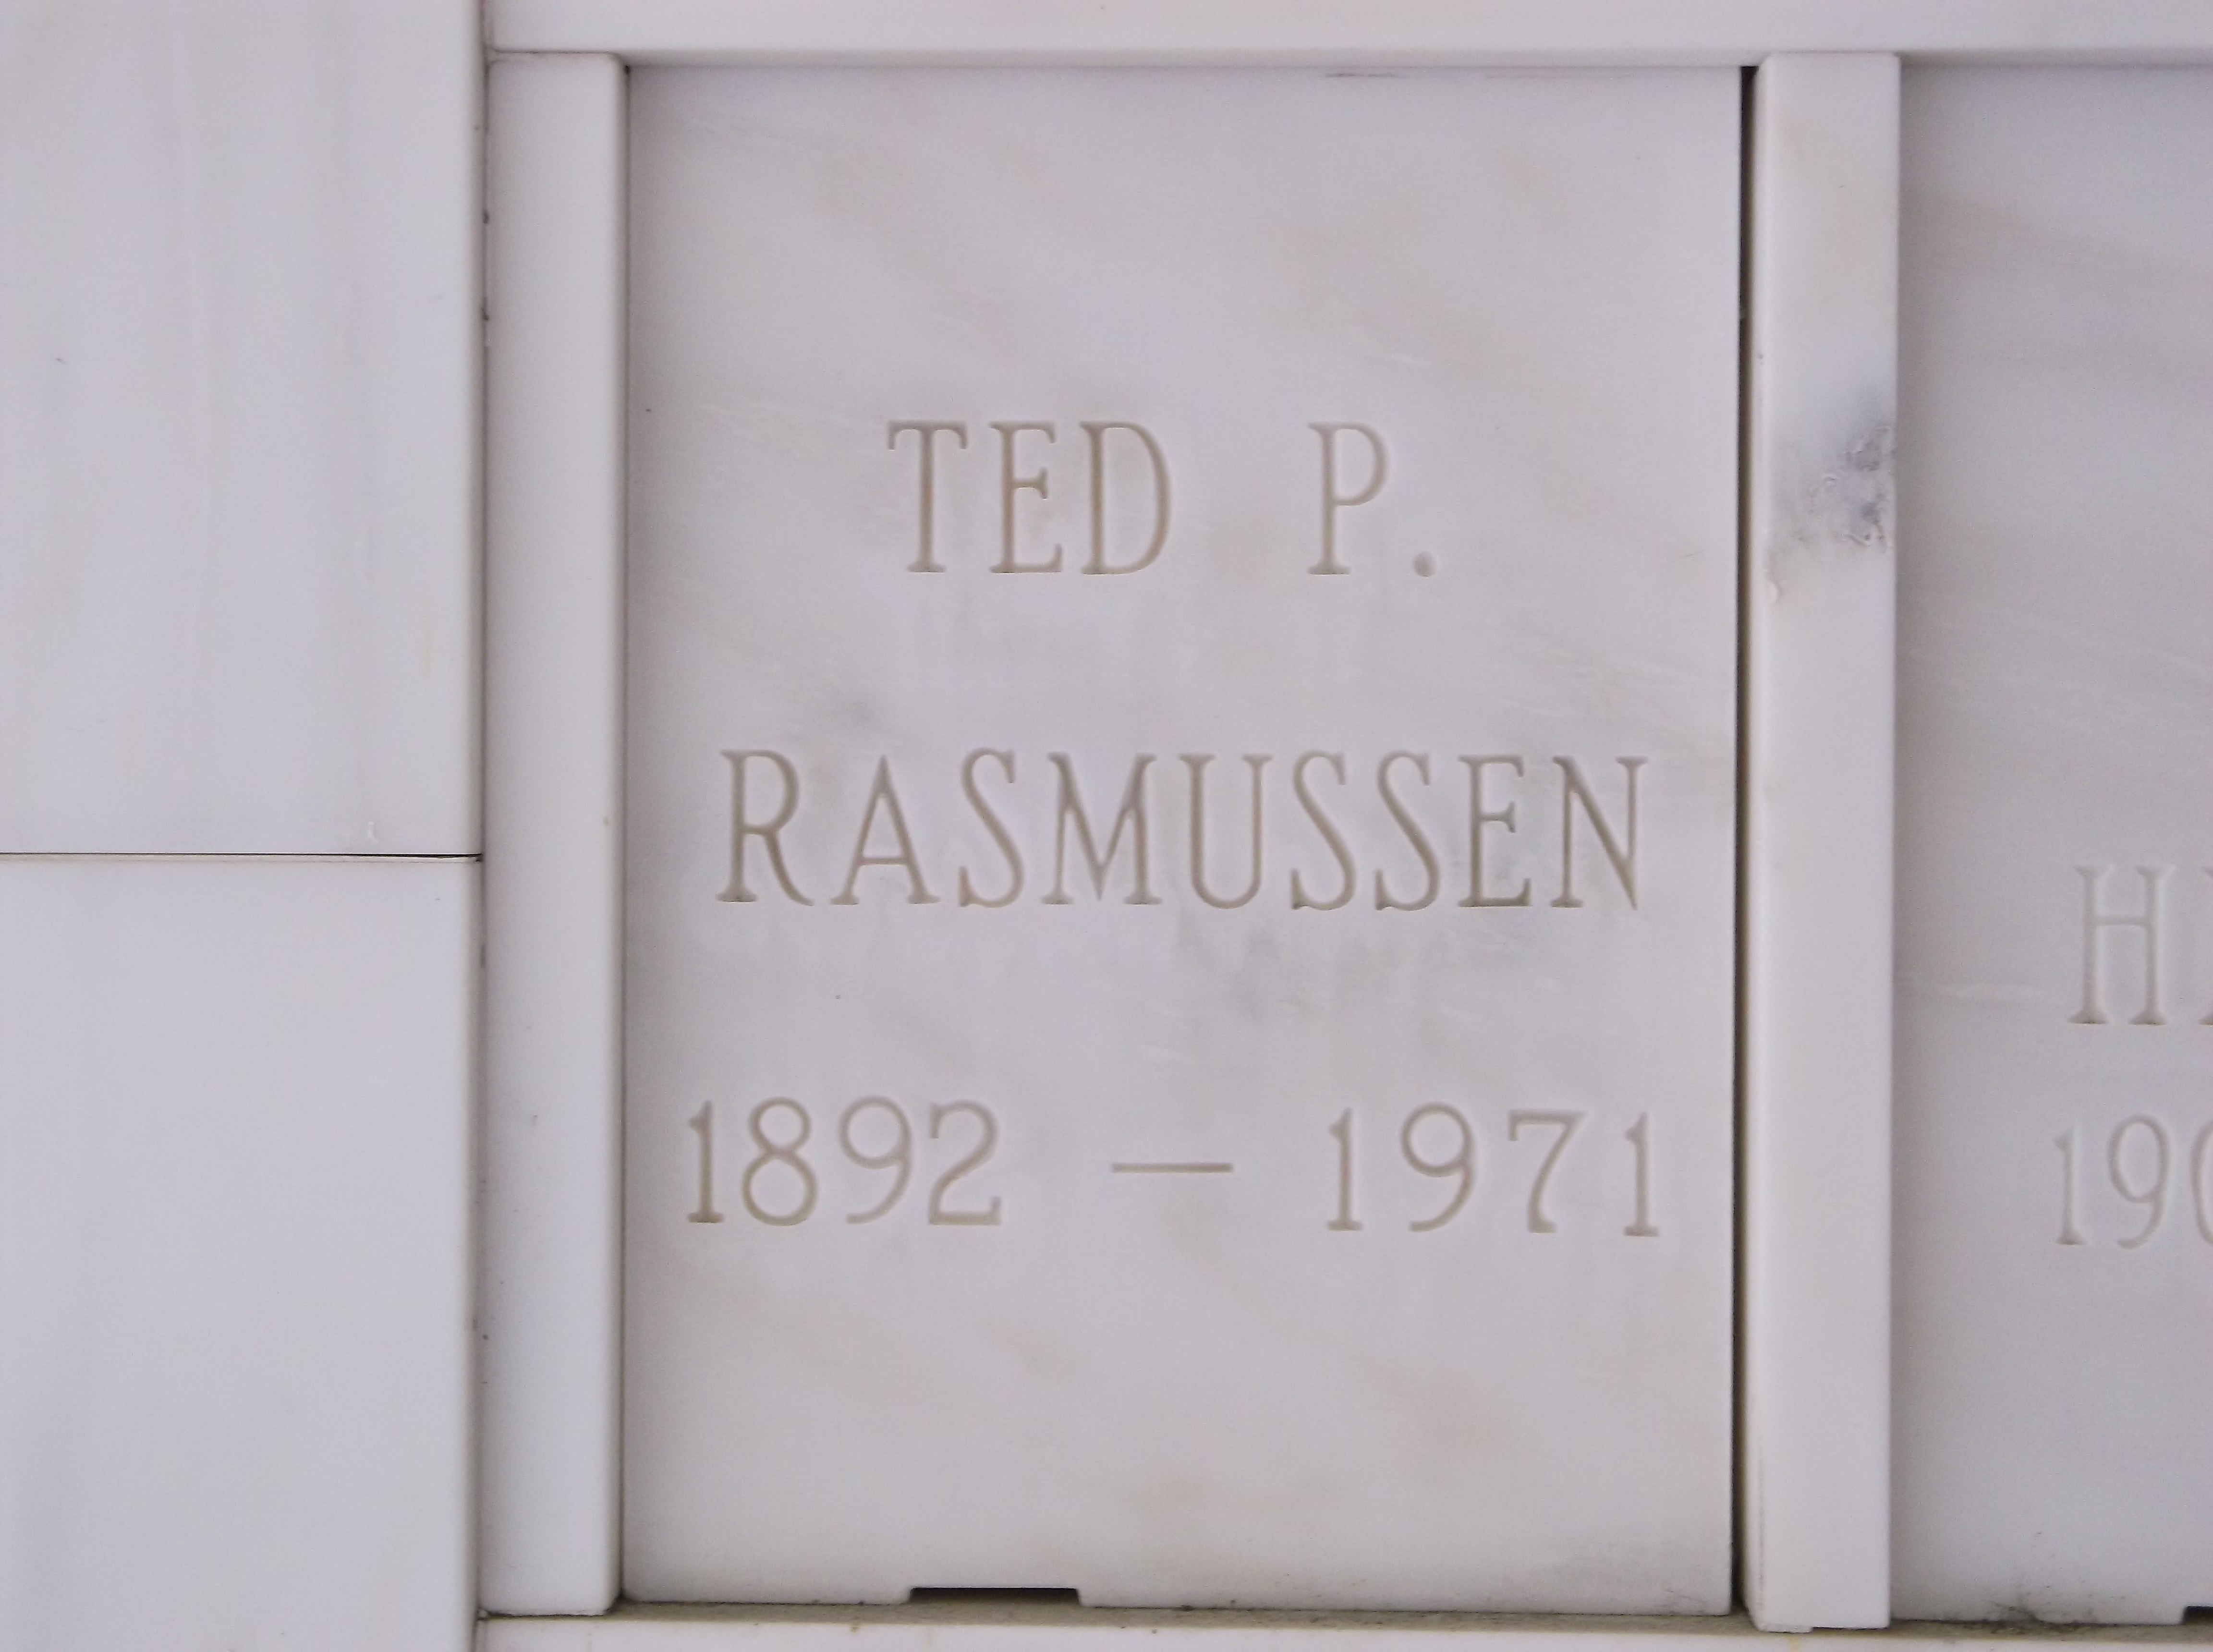 Ted P Rasmussen